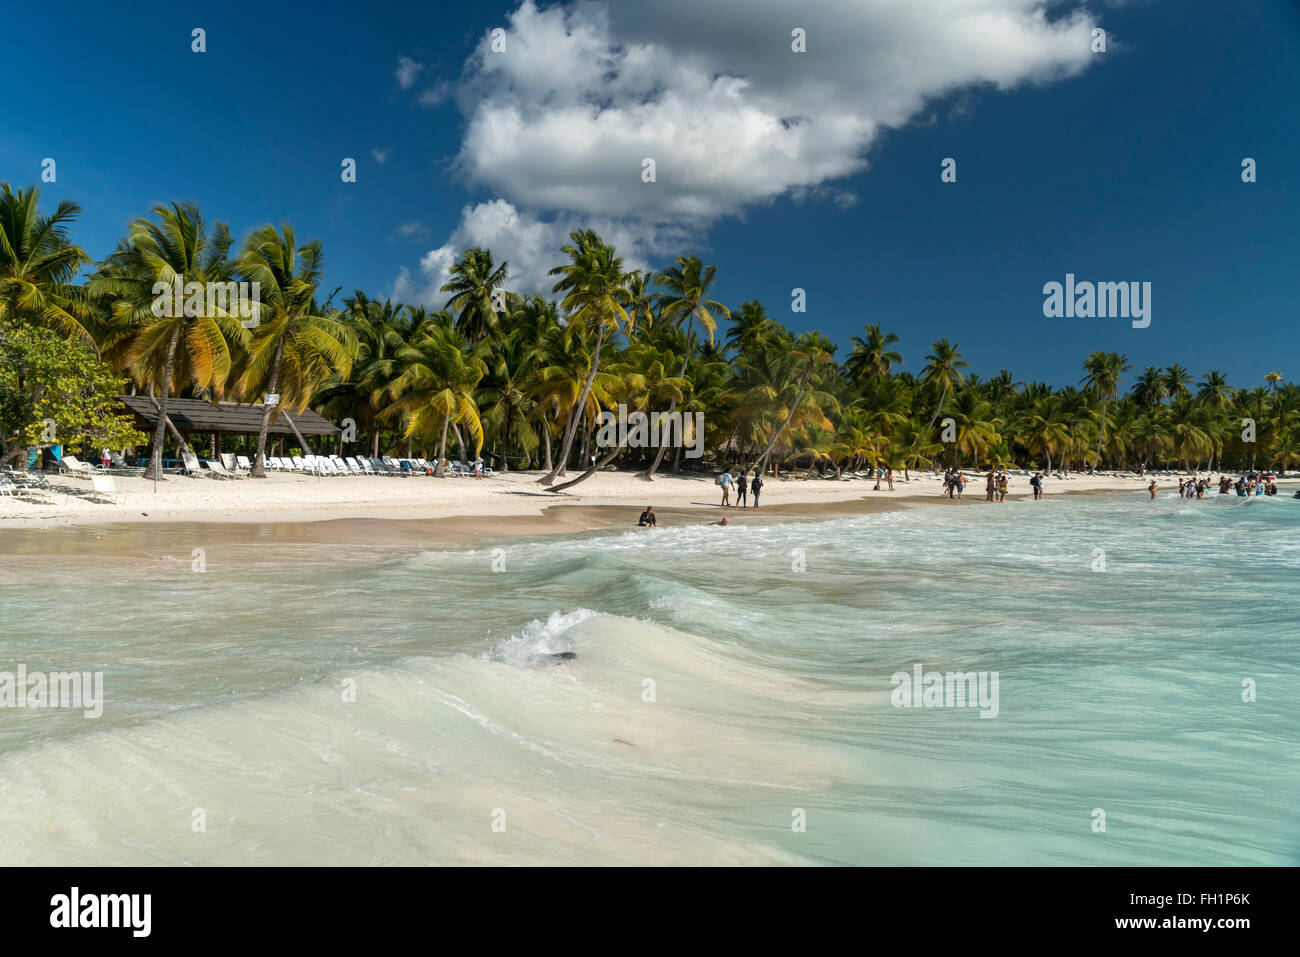 Playa de ensueño en la isla caribeña Isla Saona, República Dominicana, El Caribe, América, Foto de stock